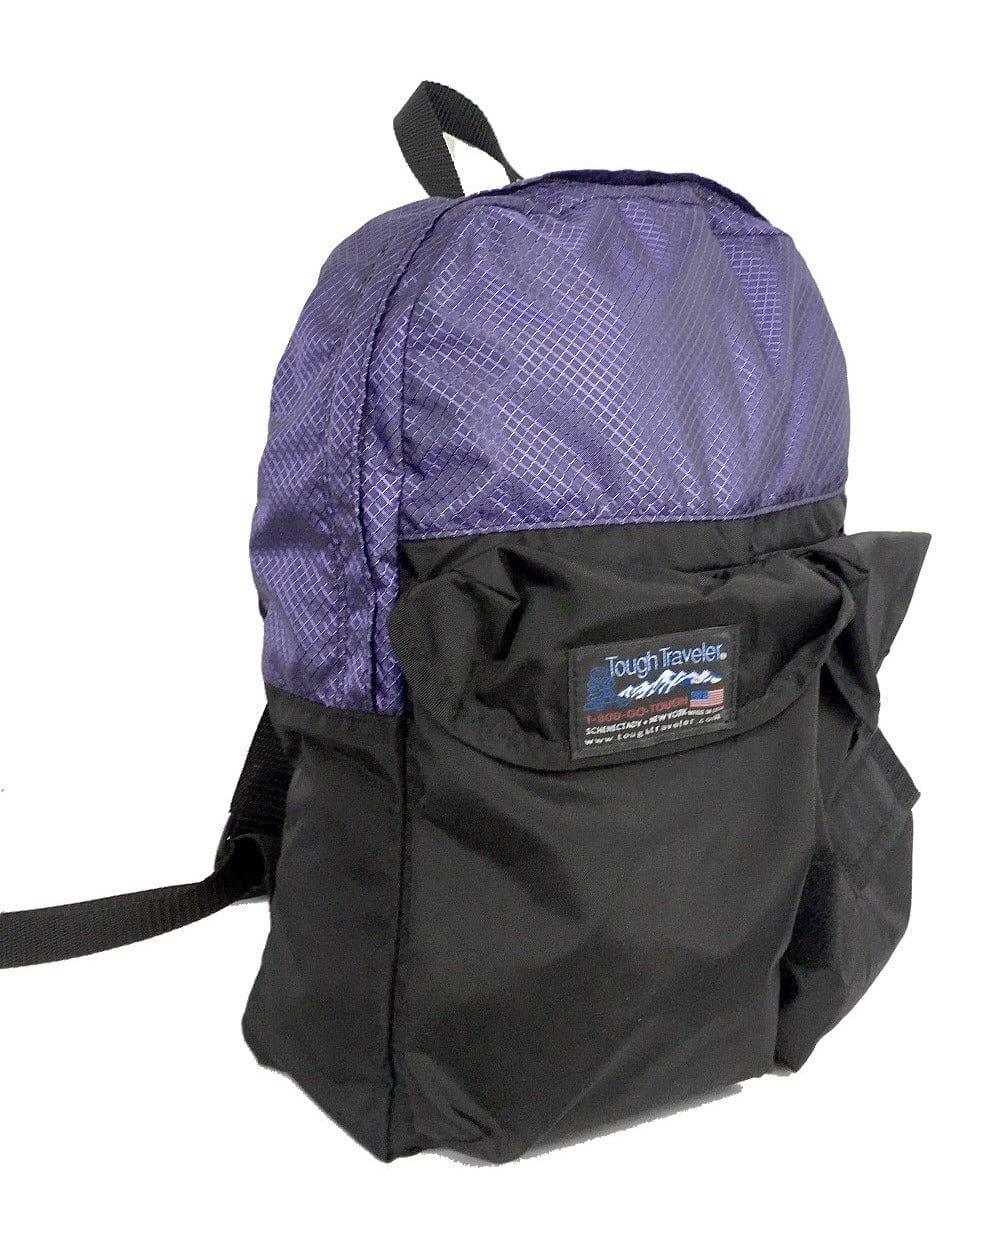 Made in USA TWINNER Backpack Backpacks